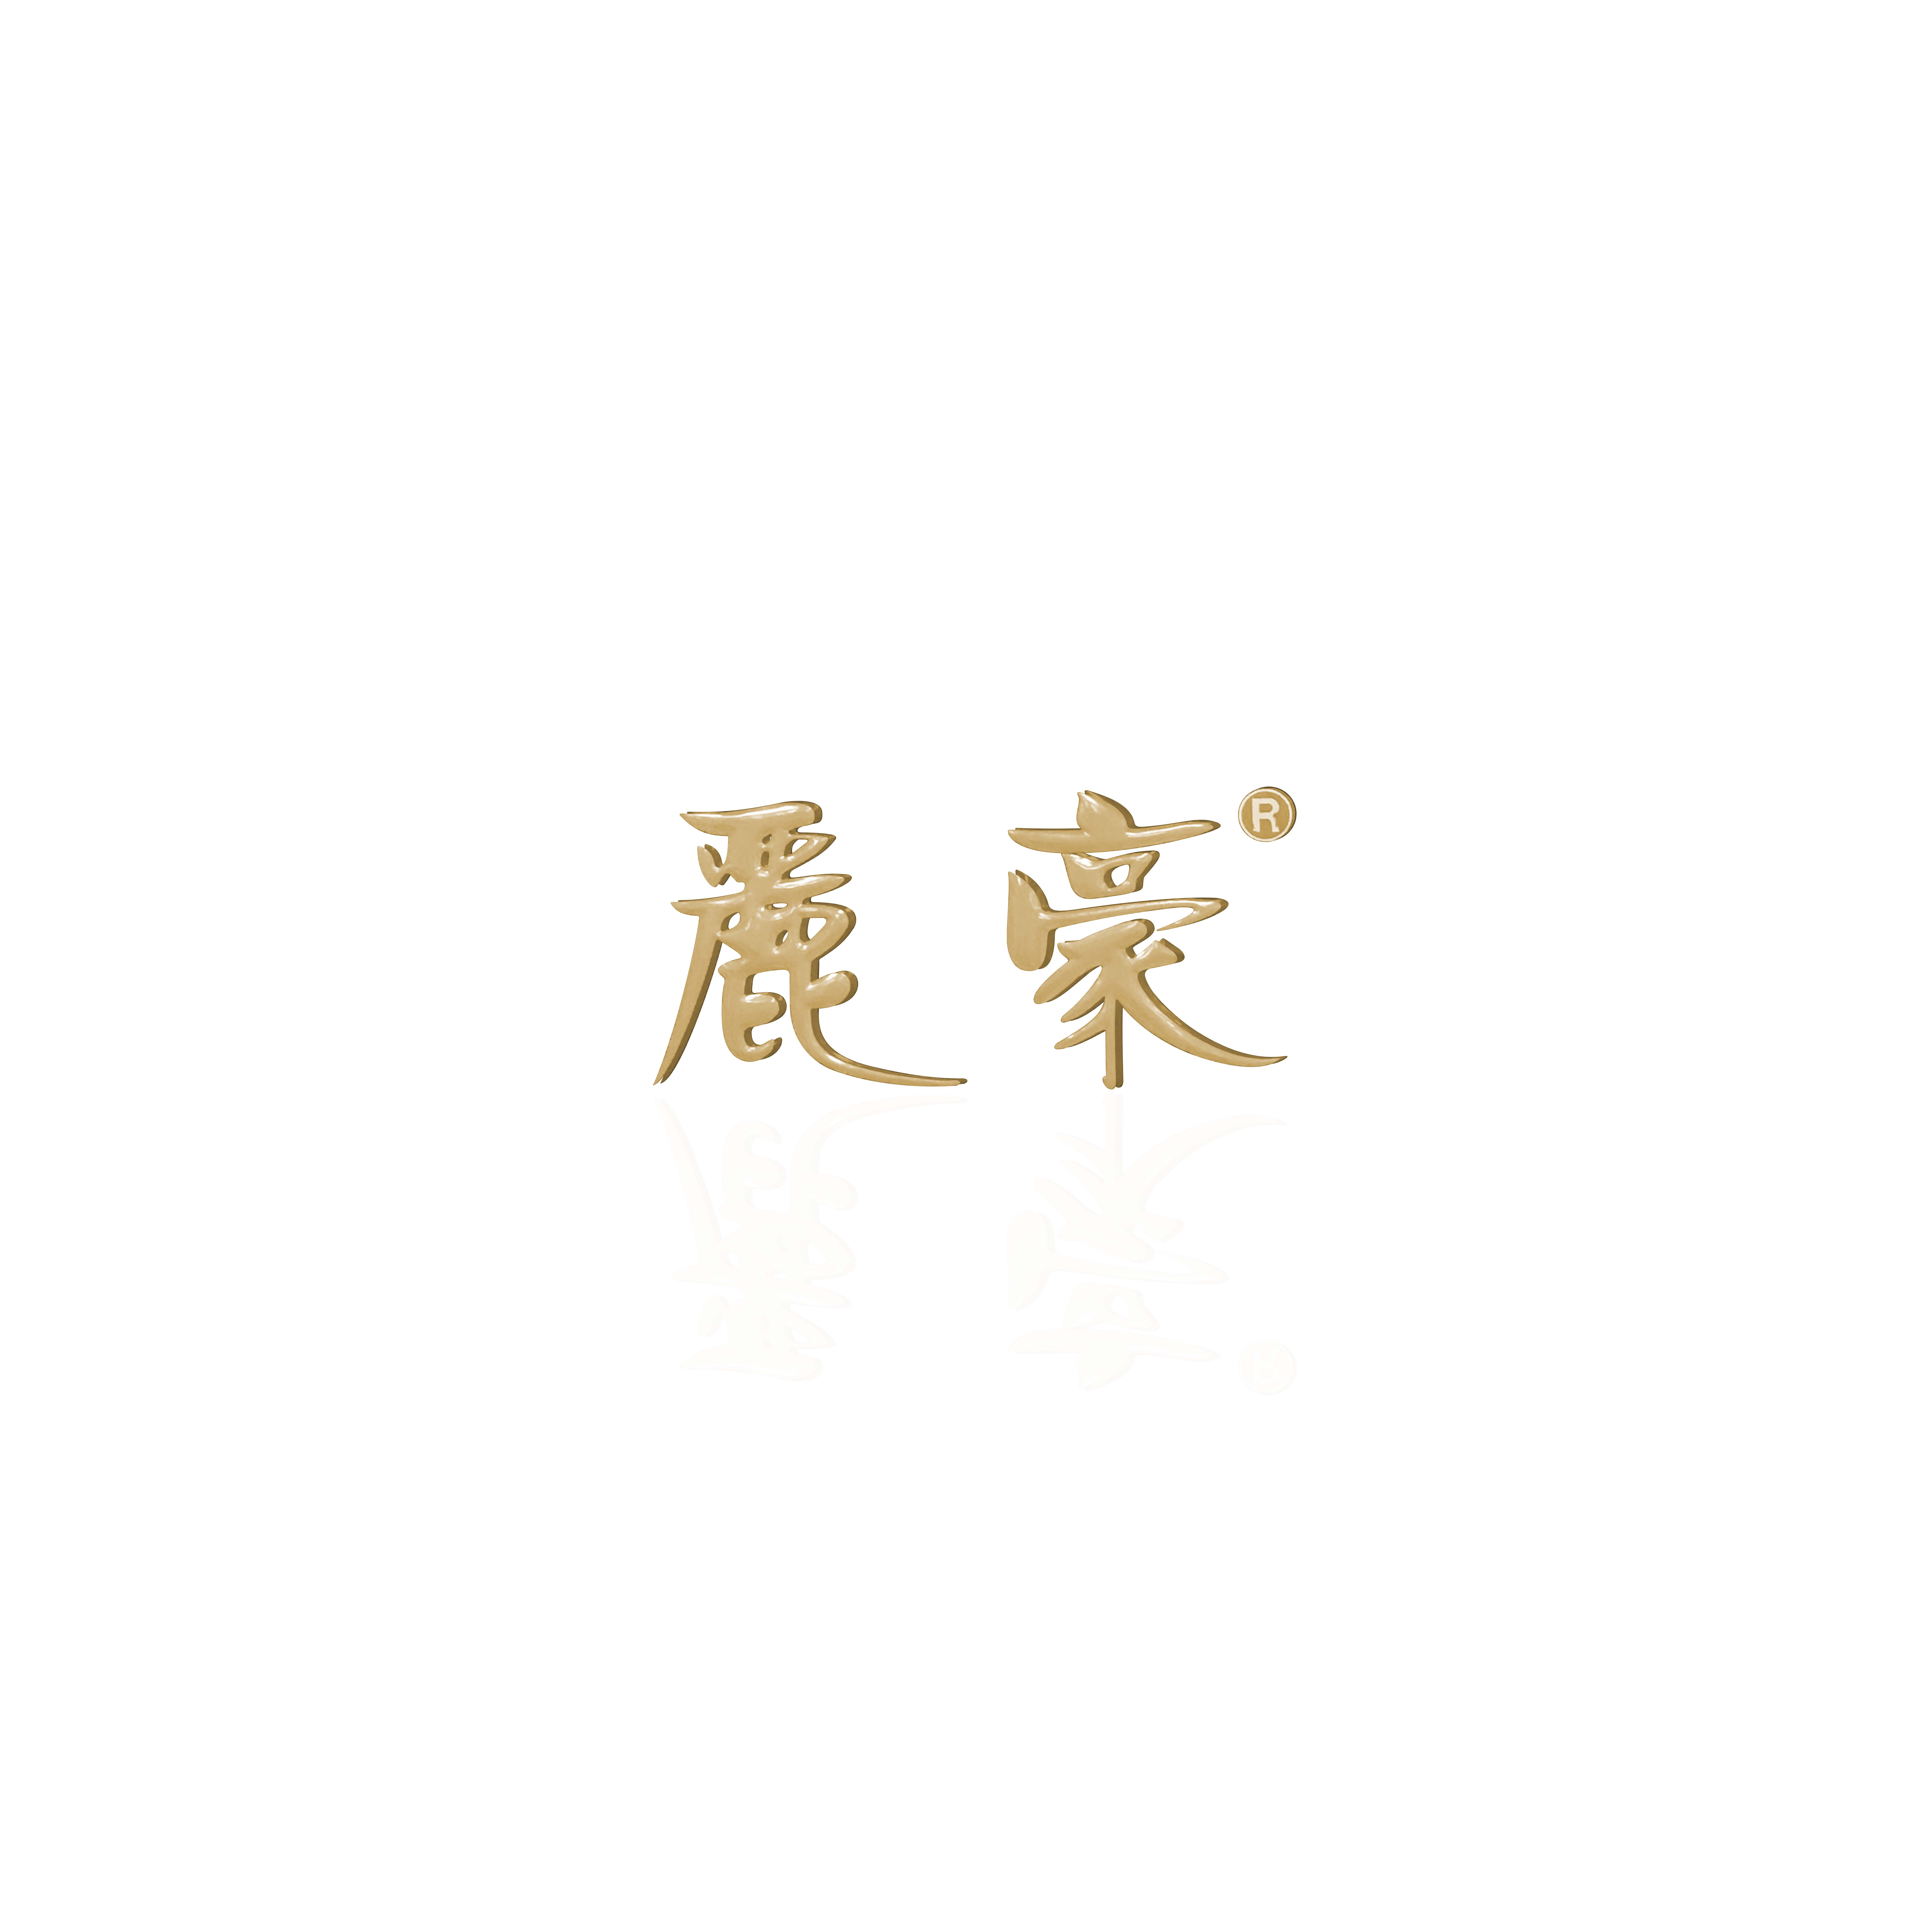 HUIZHOU XINAOQI SHOES COMPANY LTD